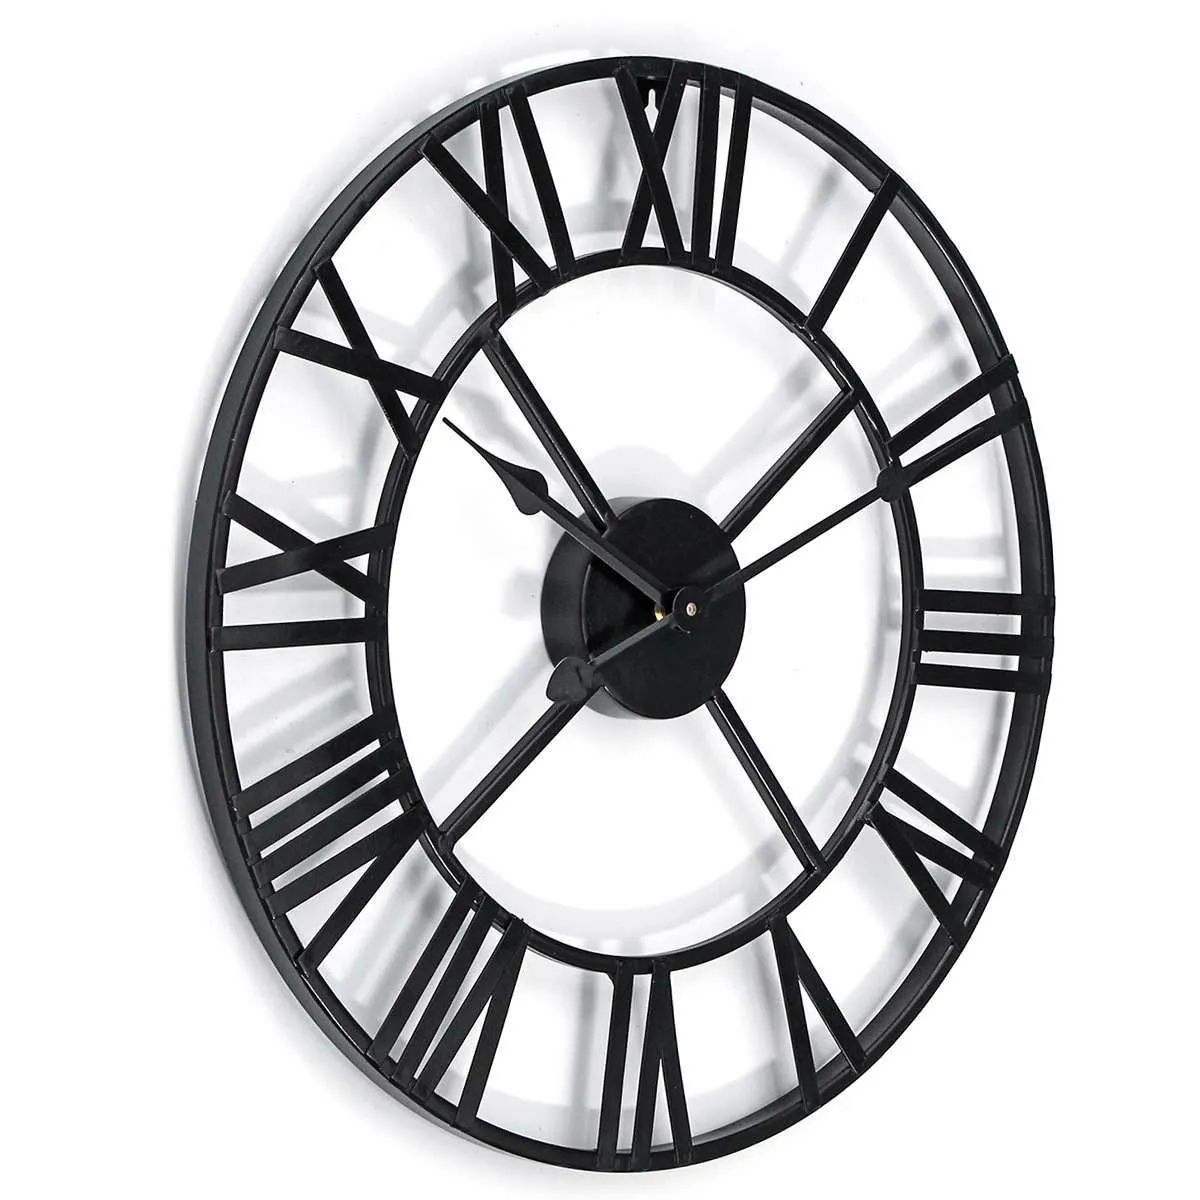 Date 40cm / 60cm Horloge Murale Vintage Décor À La Maison Salon Romain Forme Ronde Mur Décoration Décoration Accessoires Horloge 210325